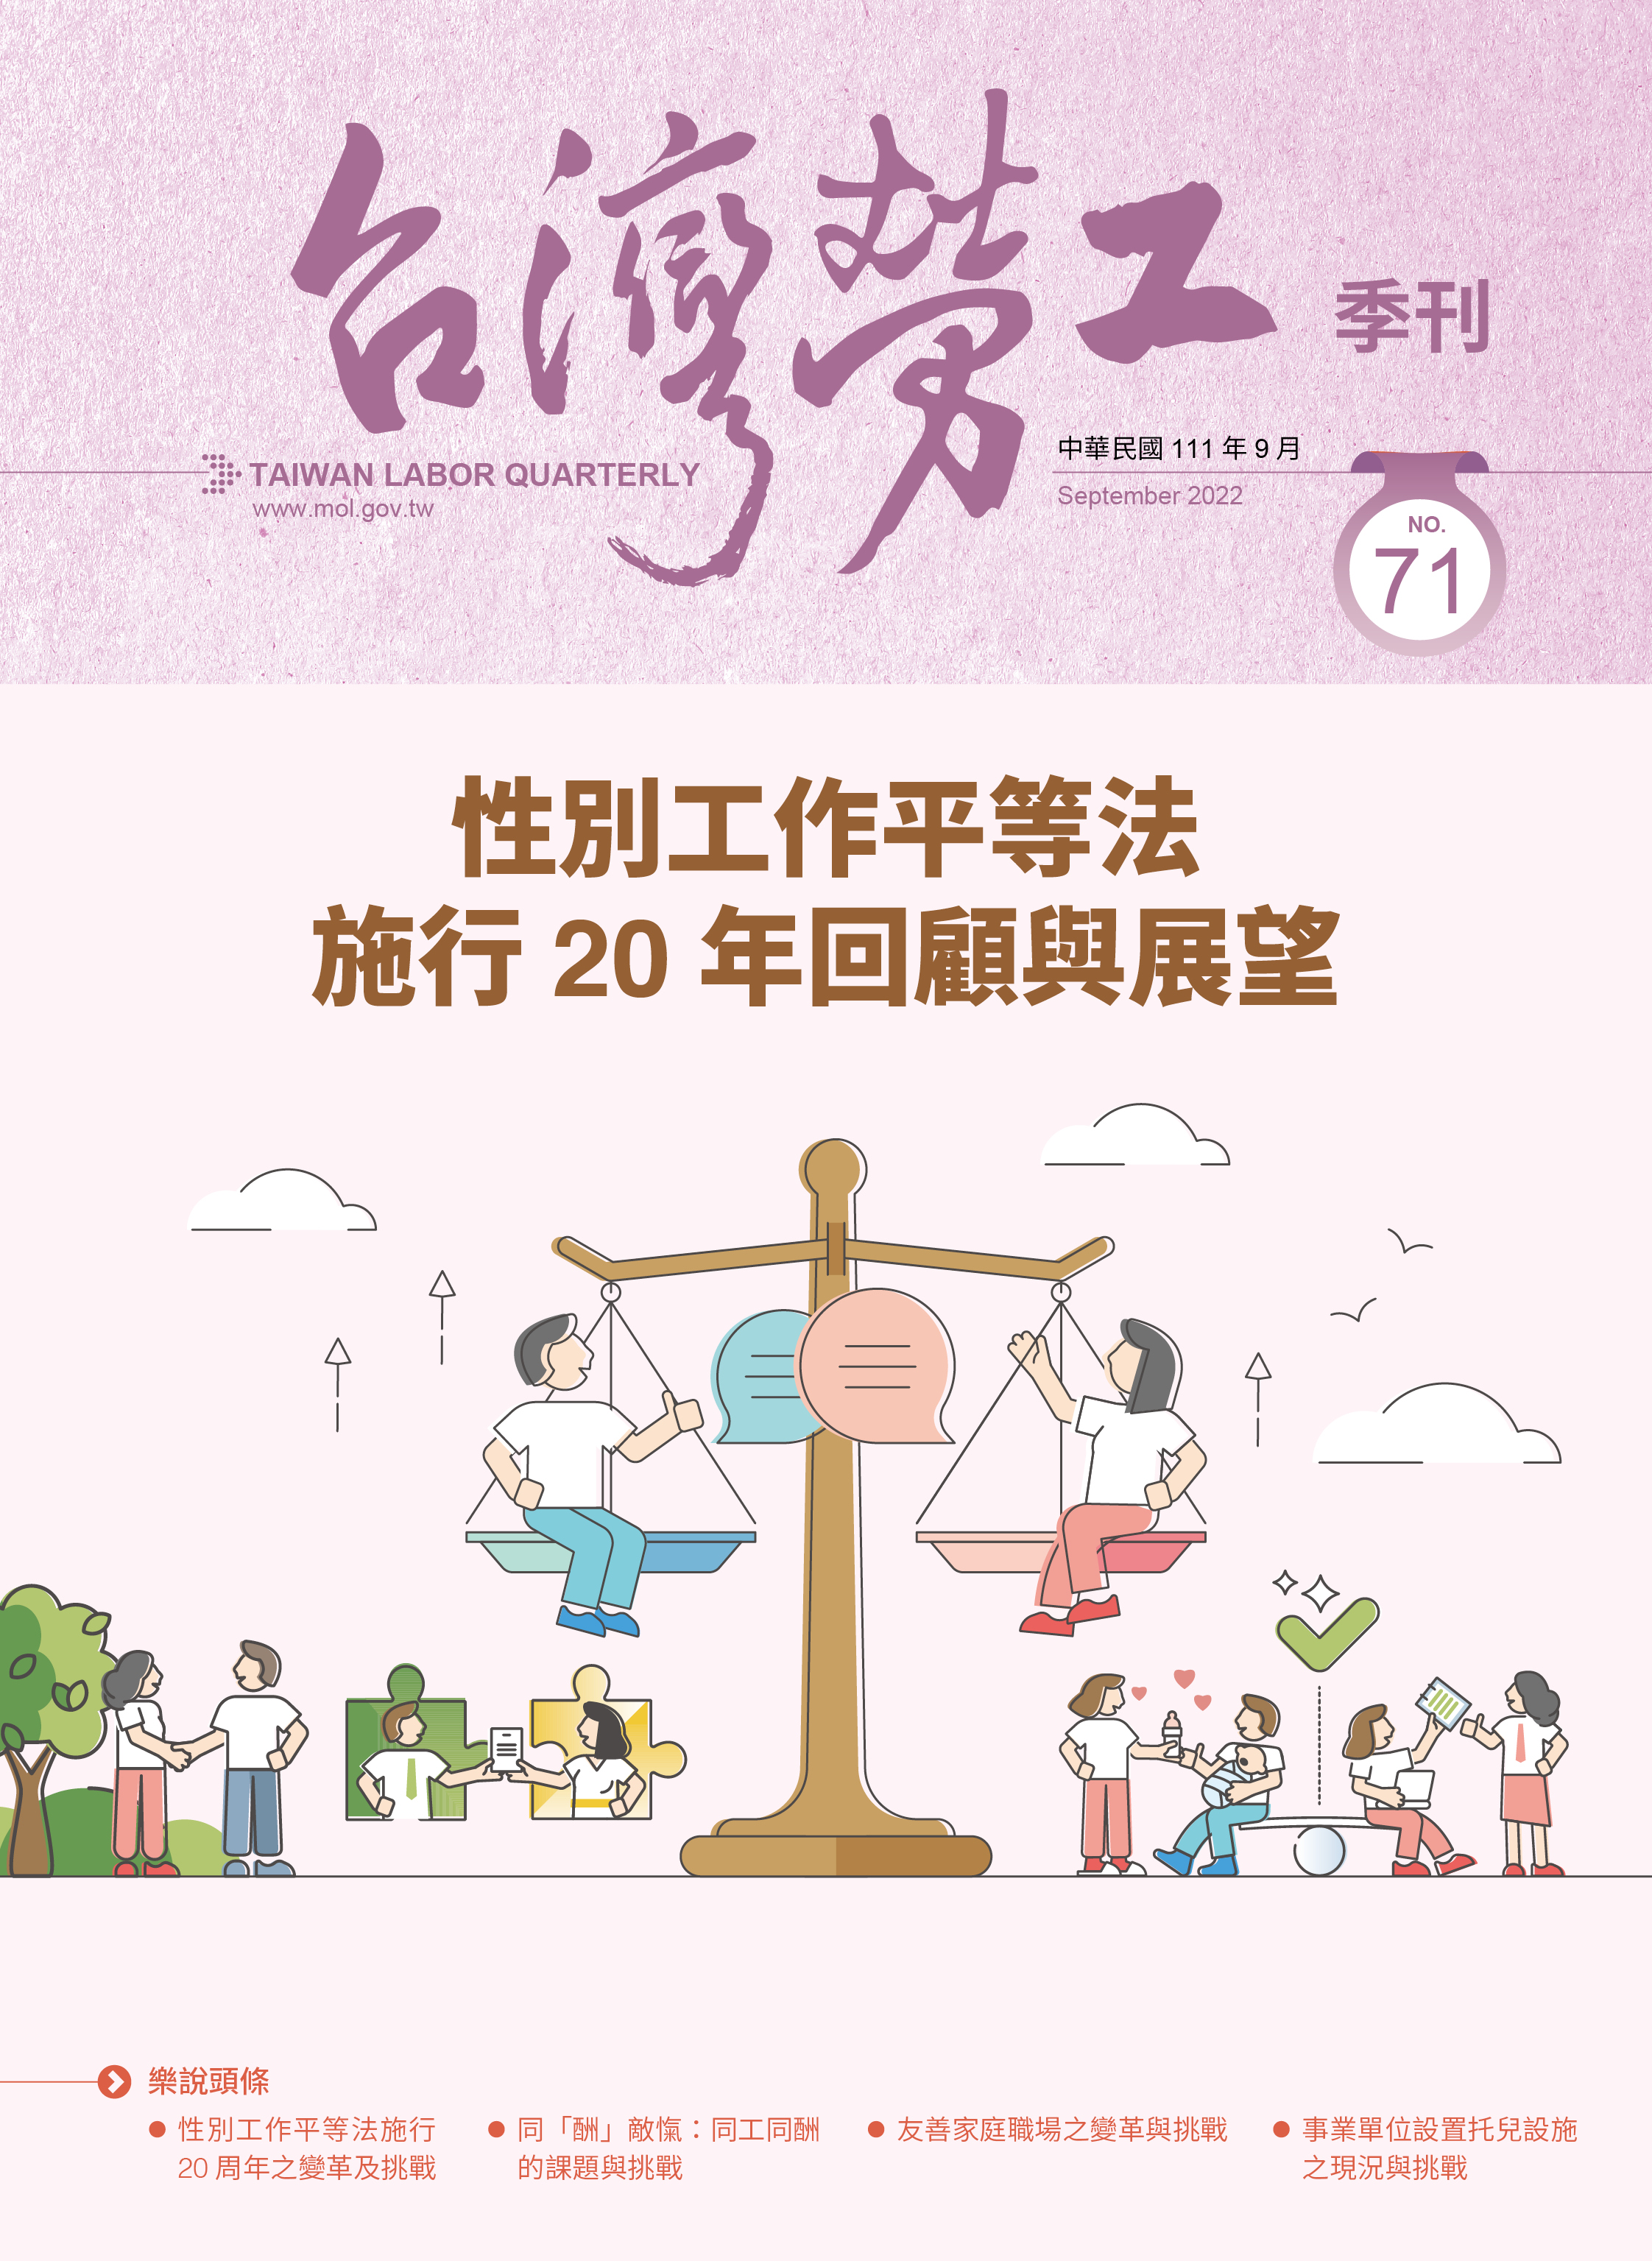 第71期-台灣勞工季刊 展示圖